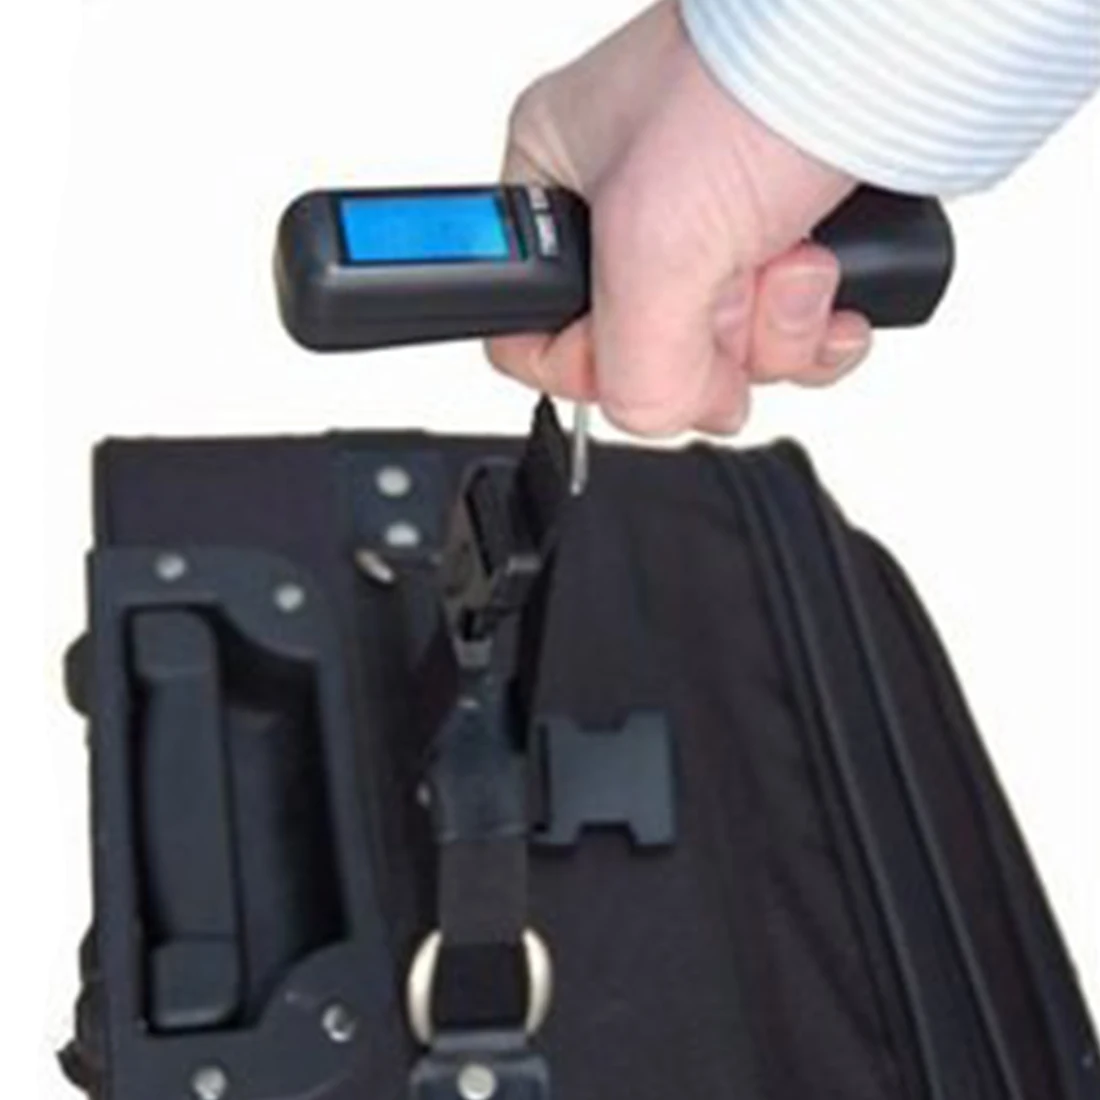 40 кг/10 г крюк весы ЖК цифровой Взвешивание для багаж для путешествий багаж чемодан вес сумки с подсветкой